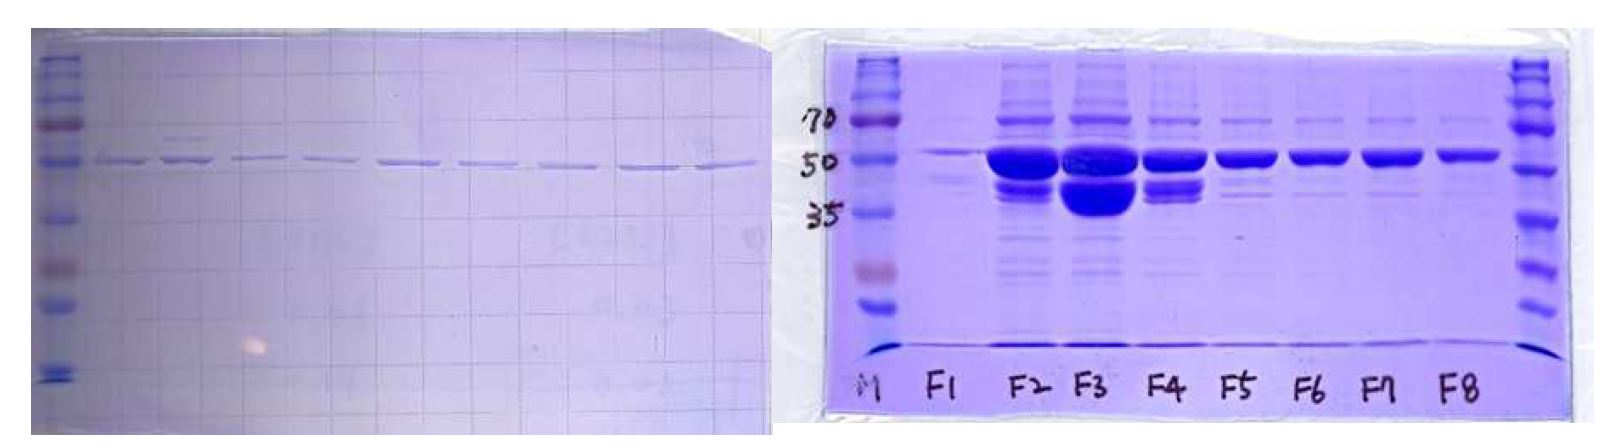 그림 10. (a) 정제된 MBP-D8 (anti-FITC ZnF) 및 point mutants. (b) MBP-B7 (anti-RANKL)의 amylose resin을 이용한 정제 fraction들